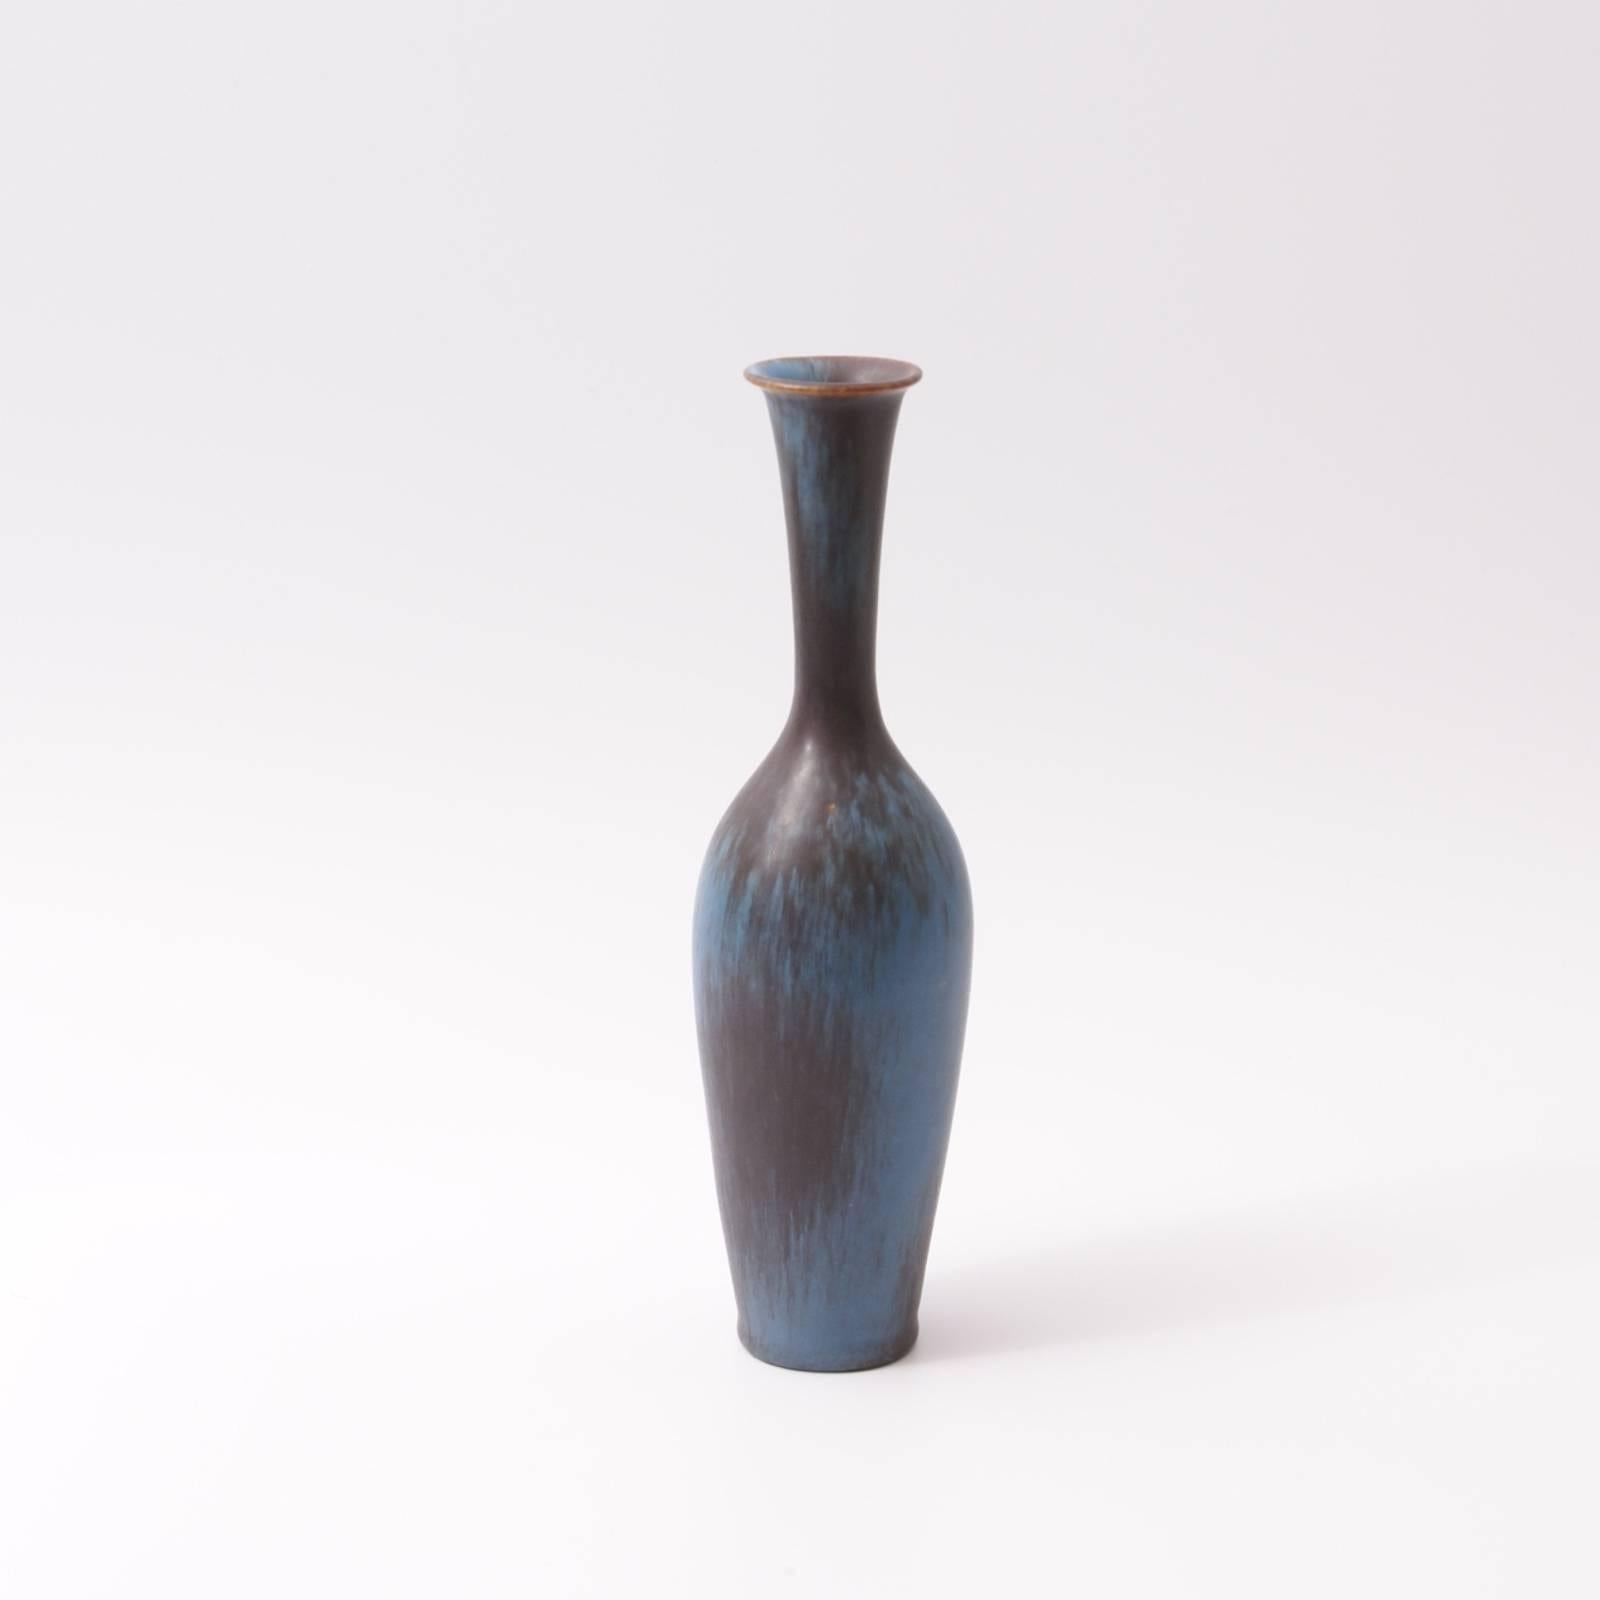 Vintage ceramic vase designed by Gunnar Nylund for Rörstrand, engraved marks underneath (image 7).